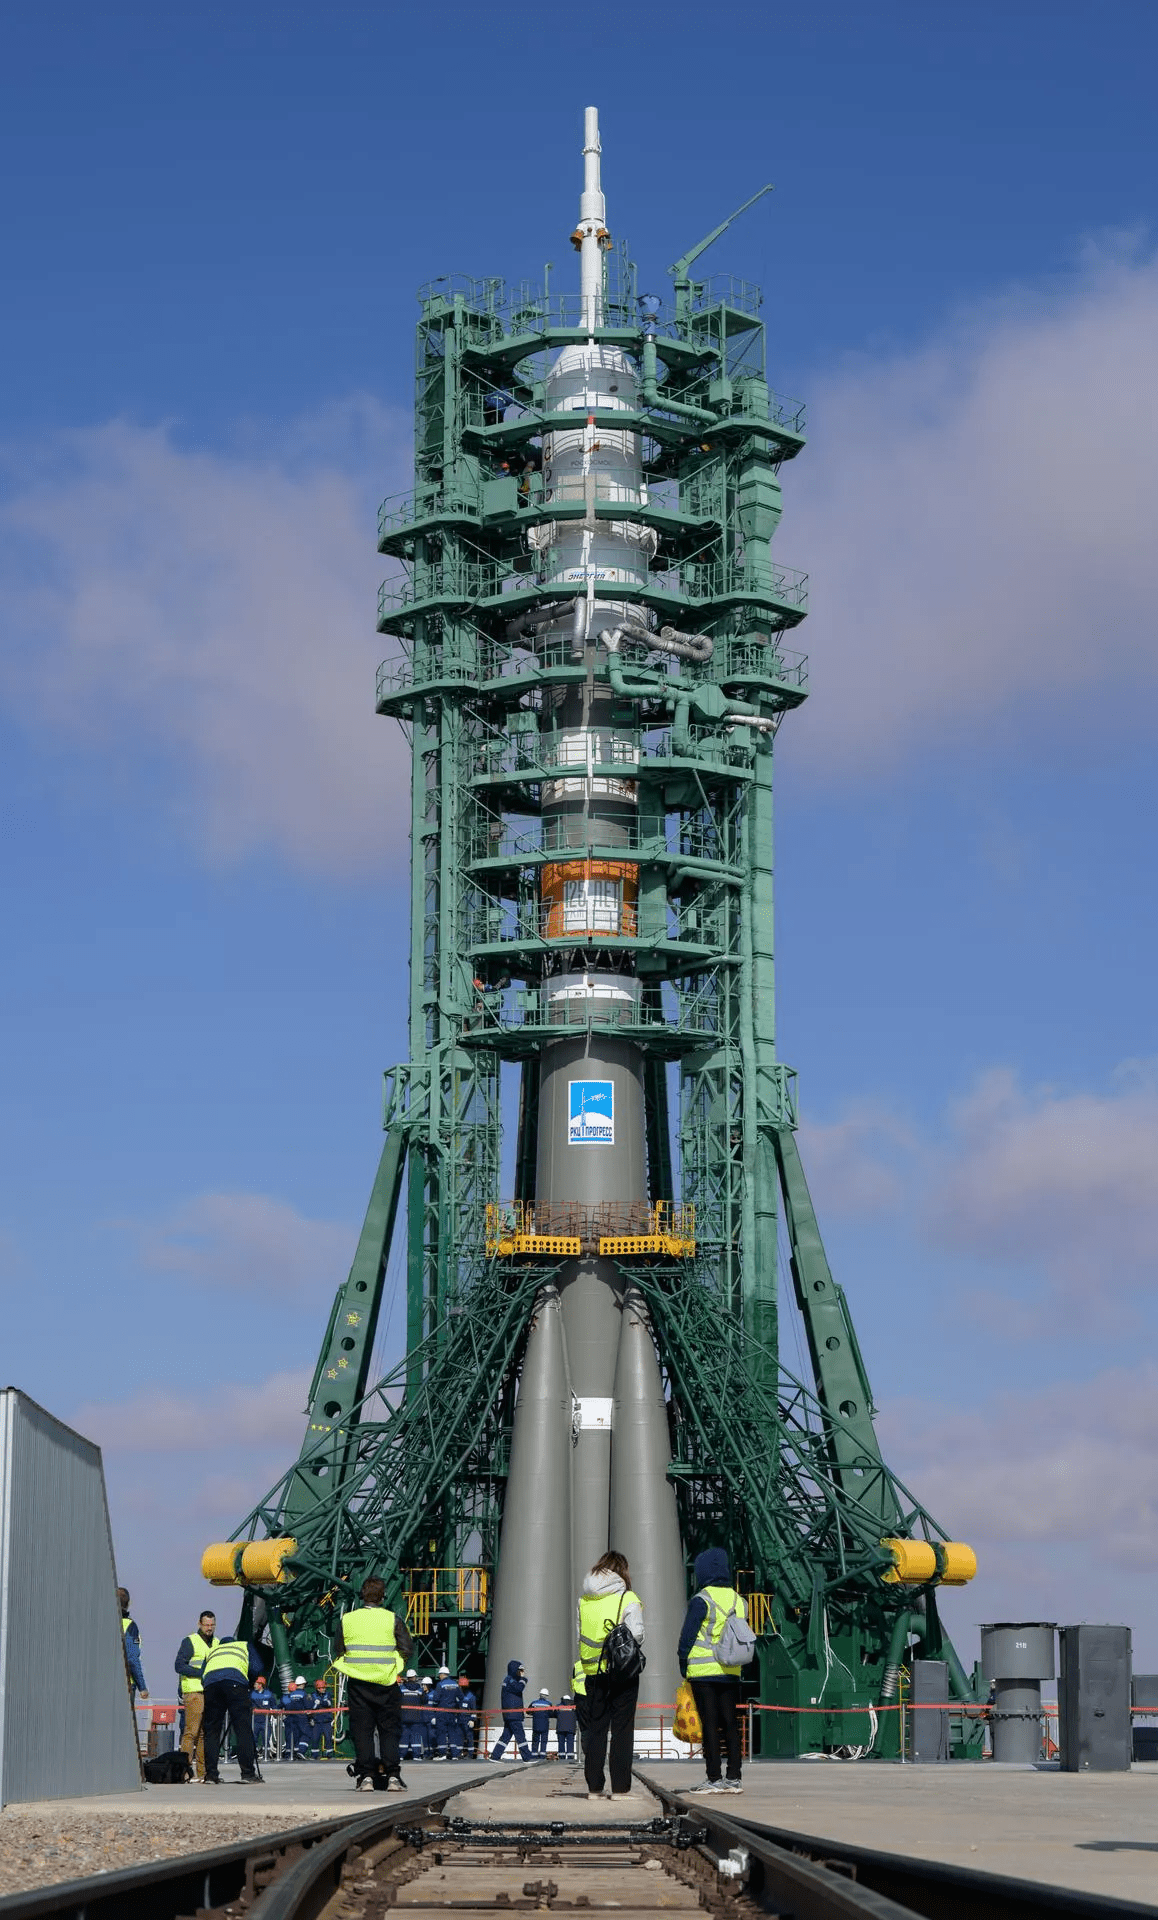 Bộ ảnh quyền lực: Nga nâng tên lửa Soyuz lên bệ, sắp có chuyến bay lịch sử - Ảnh 7.